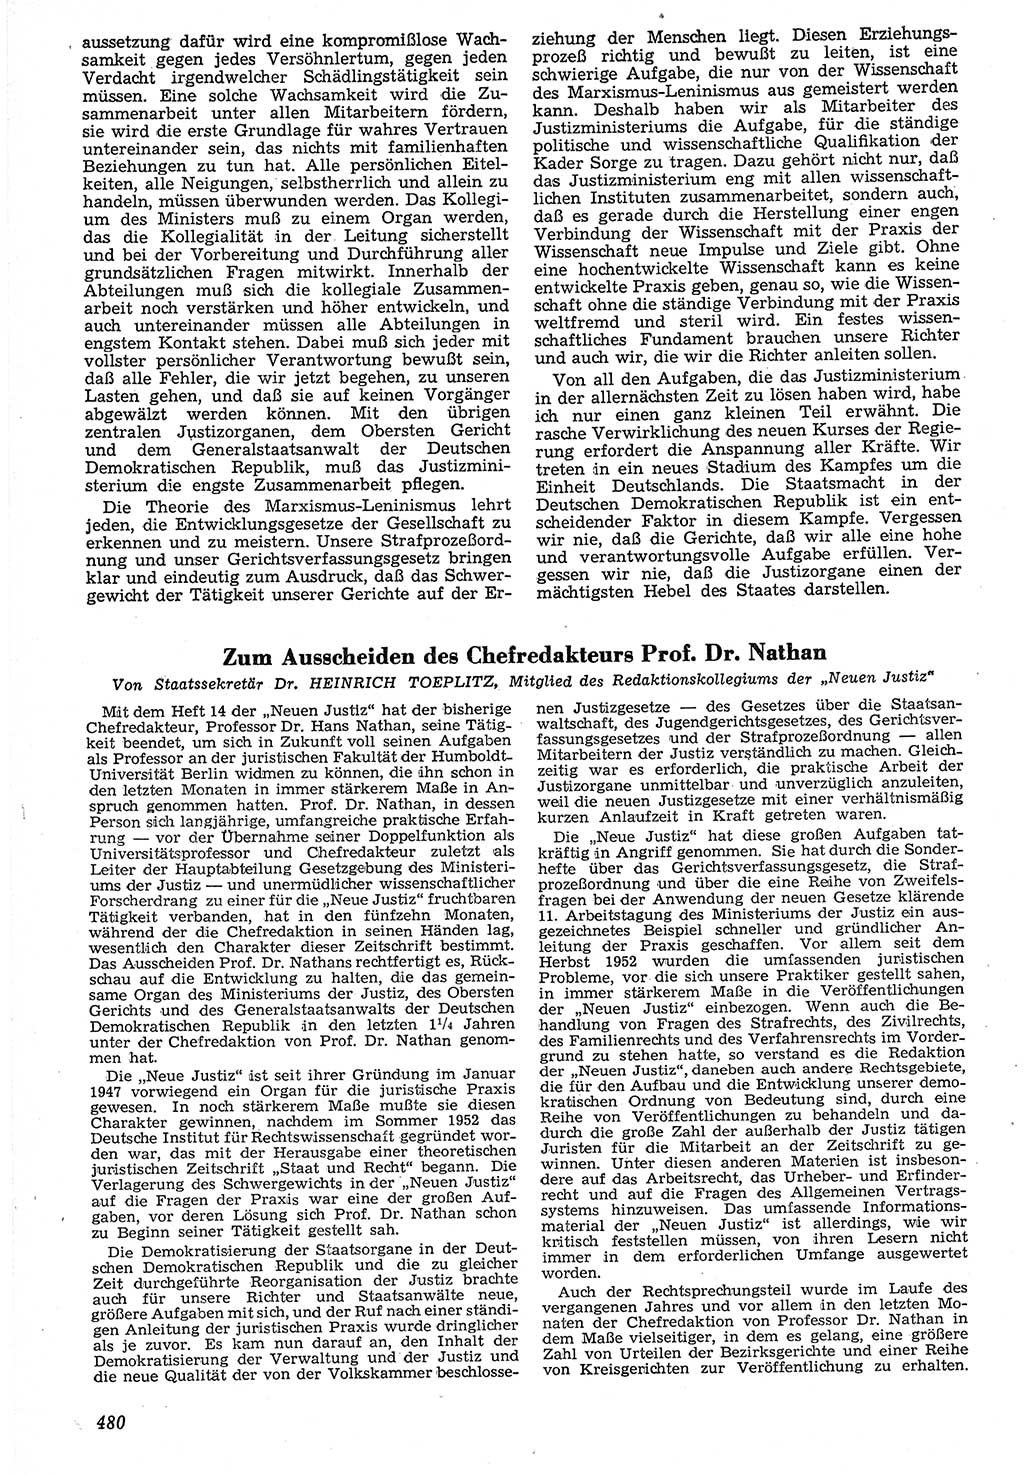 Neue Justiz (NJ), Zeitschrift für Recht und Rechtswissenschaft [Deutsche Demokratische Republik (DDR)], 7. Jahrgang 1953, Seite 480 (NJ DDR 1953, S. 480)